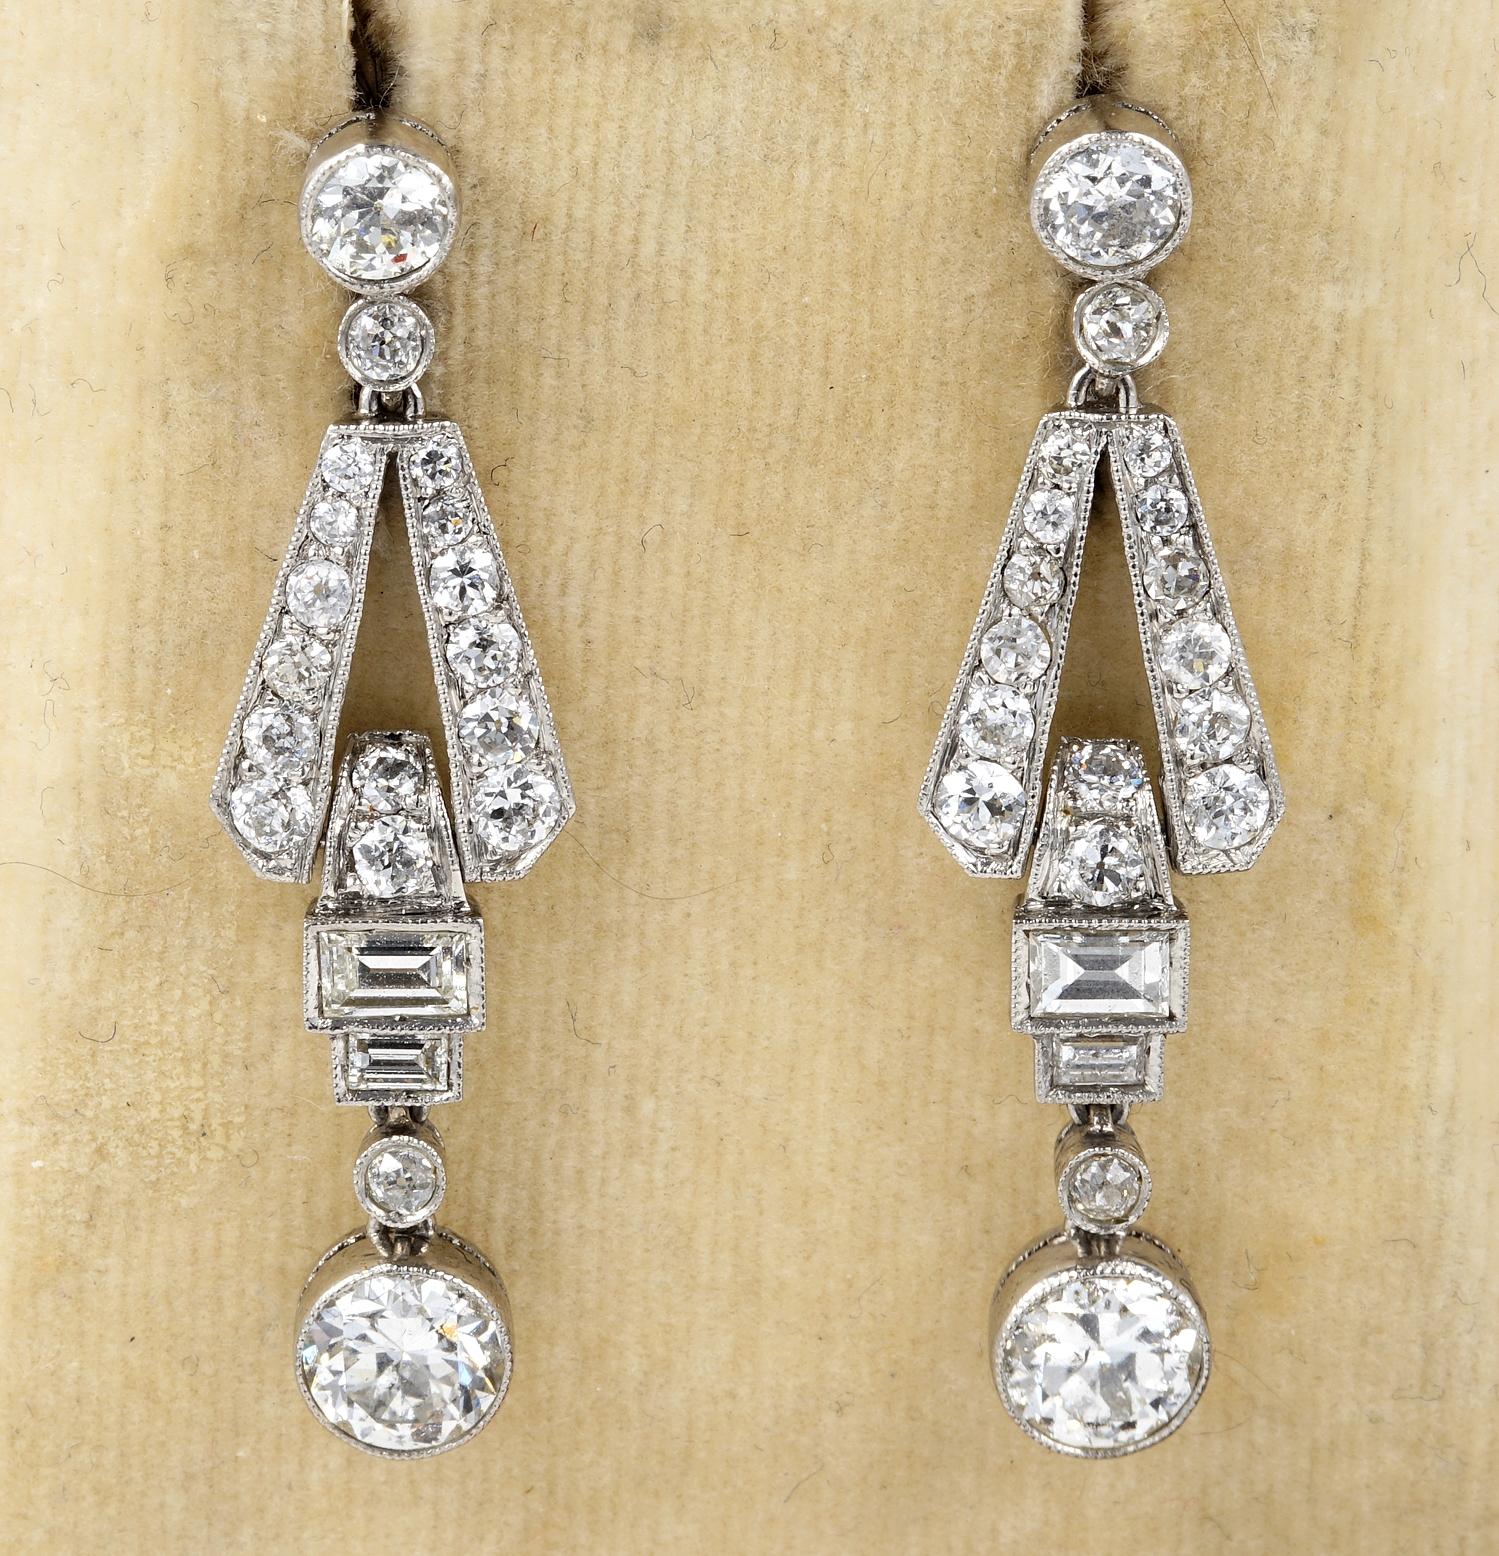 Dieses wunderbare Paar Diamant-Ohrringe sind Art Deco Zeitraum 1920 ca.
Hervorragendes Design, das die raffinierte Eleganz der damaligen Zeit voll zum Ausdruck bringt
Gekonnt handgefertigt als Unikat aus massivem Platin
Set mit 3,60 TCW Diamanten im